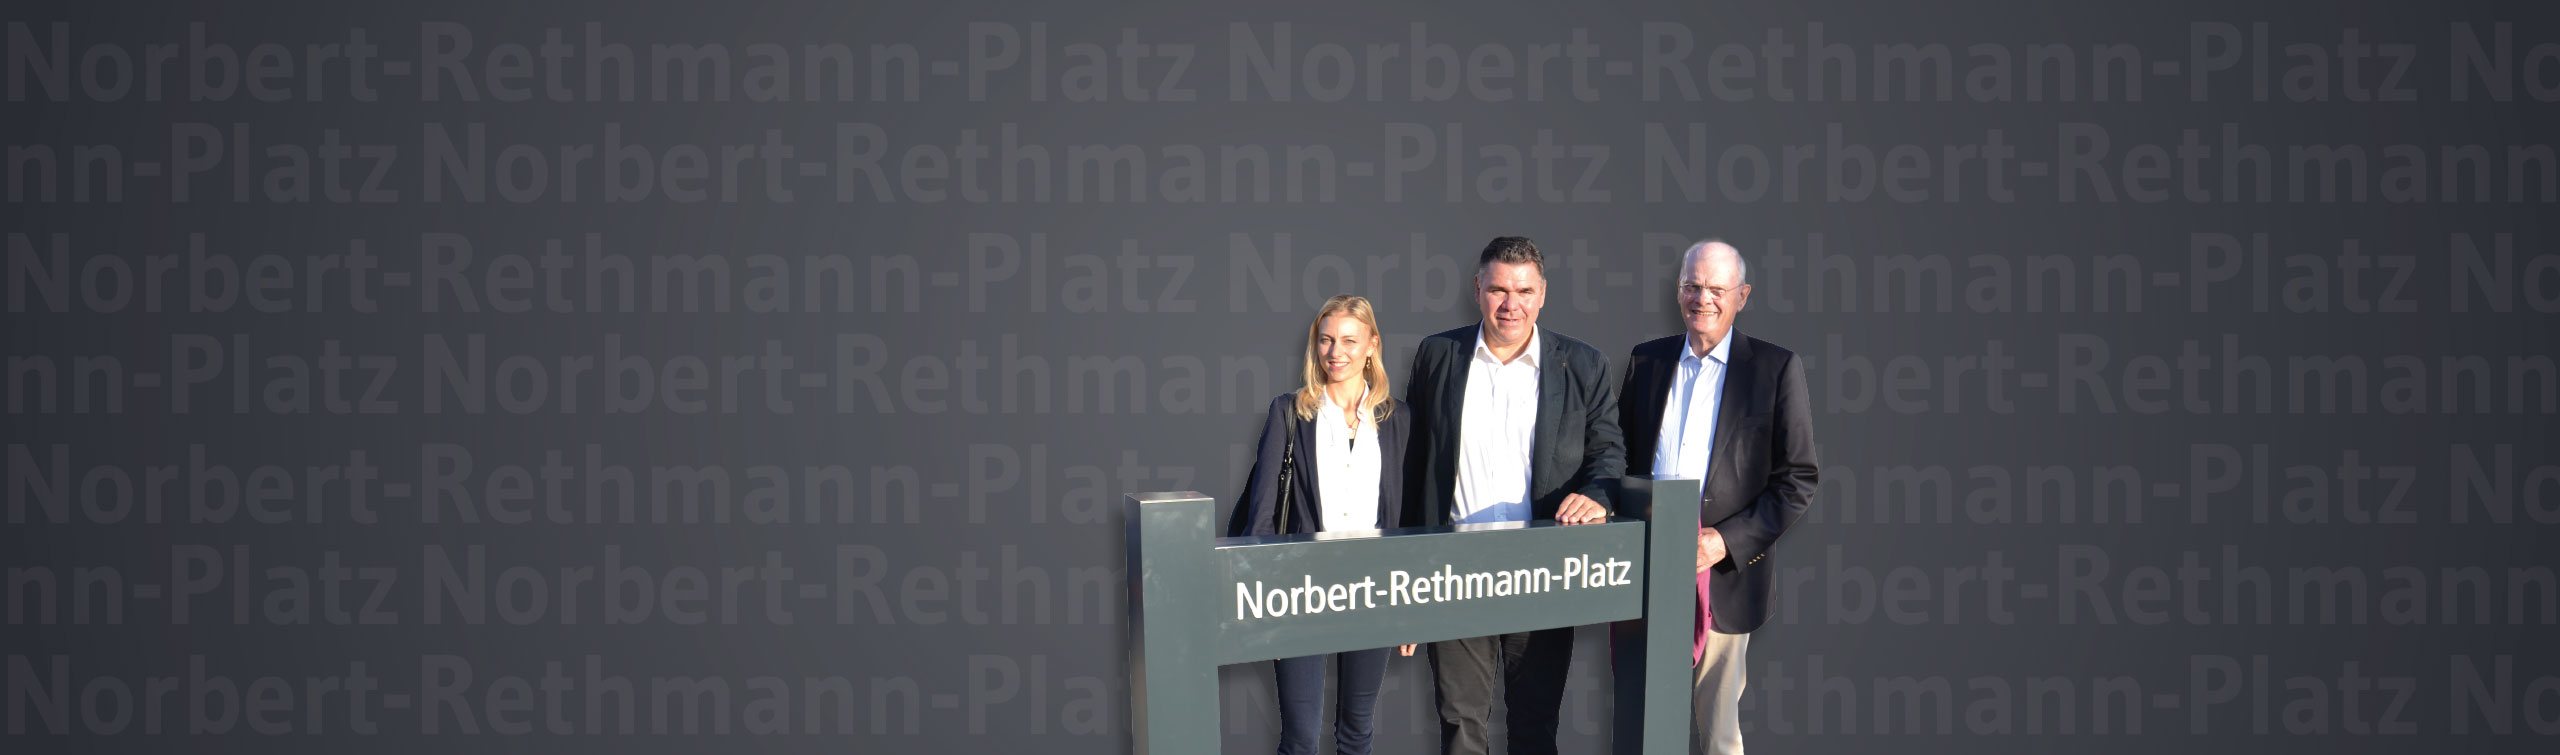 Norbert-Rethmann-Platz in Selm officially named